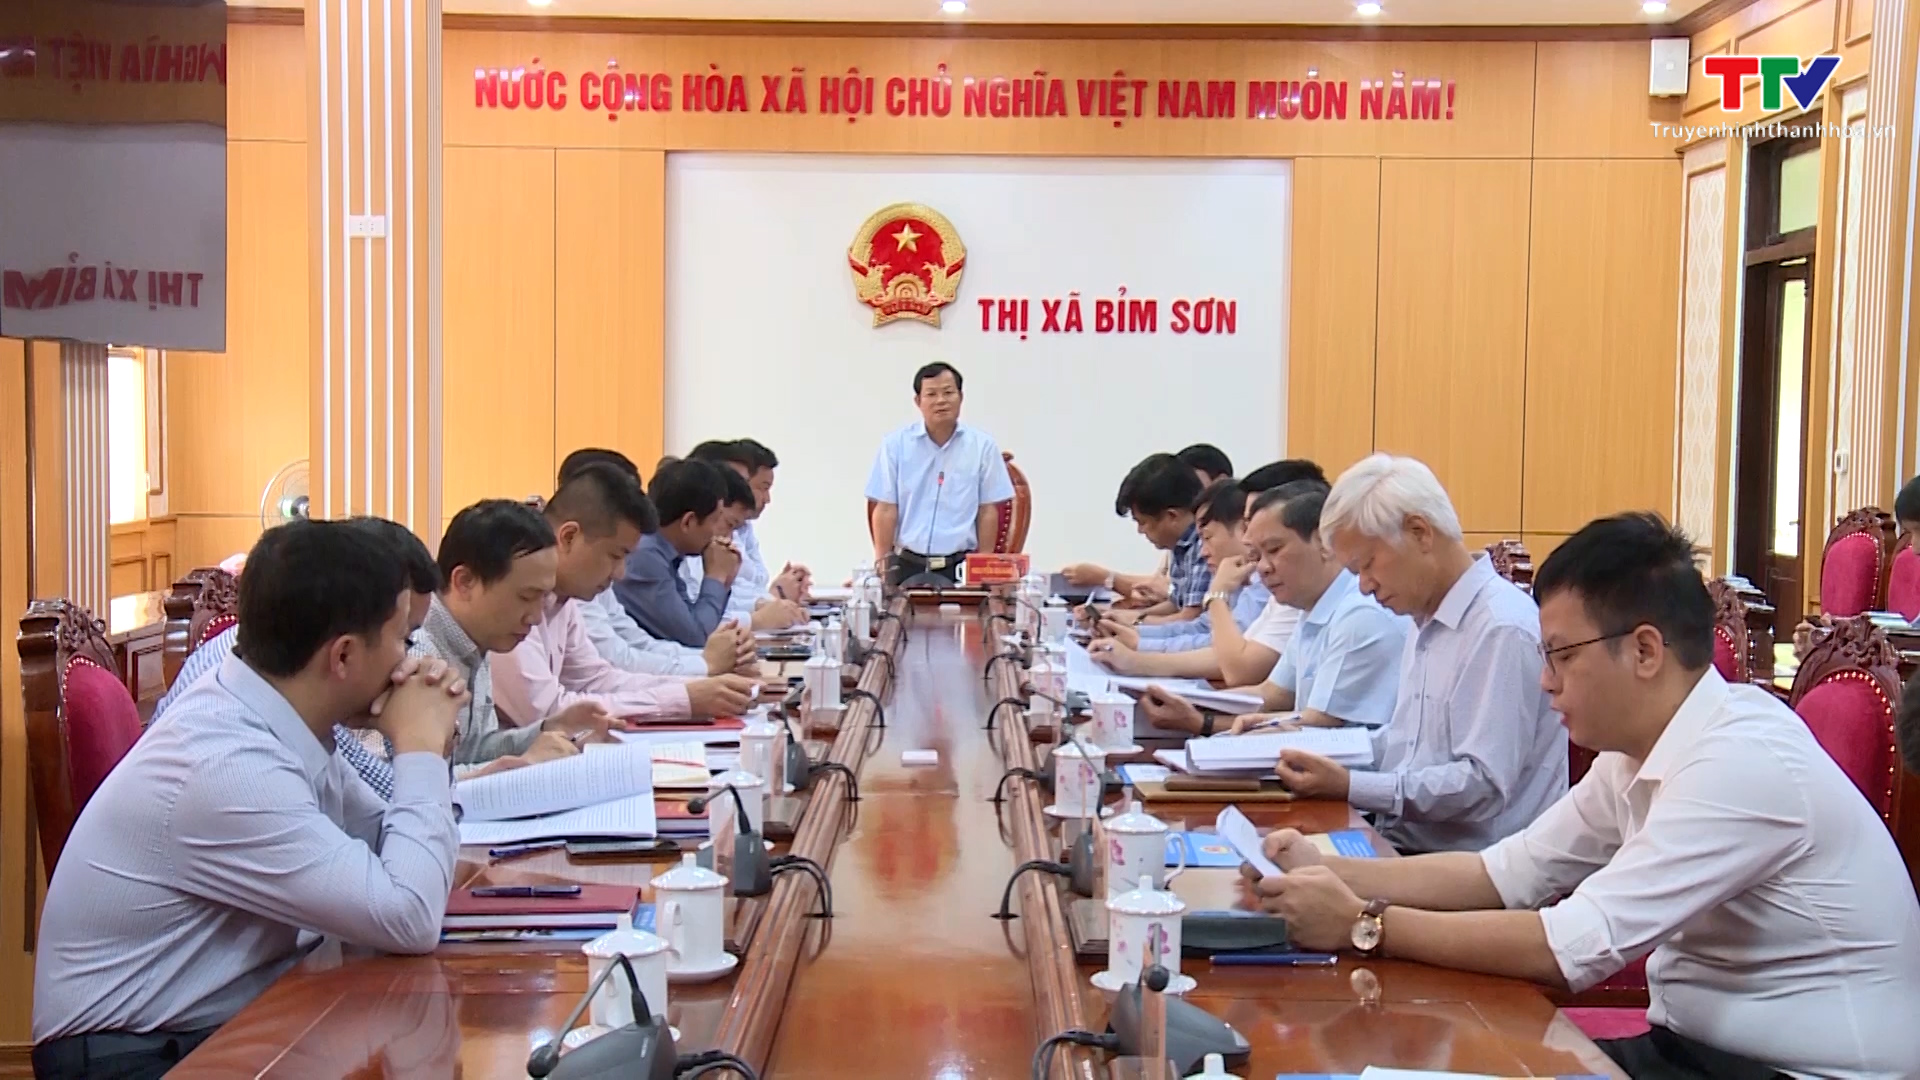 Giám sát việc chấp hành pháp luật trong công tác quản lý Nhà nước về quy hoạch xây dựng trên địa bàn thị xã Bỉm Sơn - Ảnh 2.